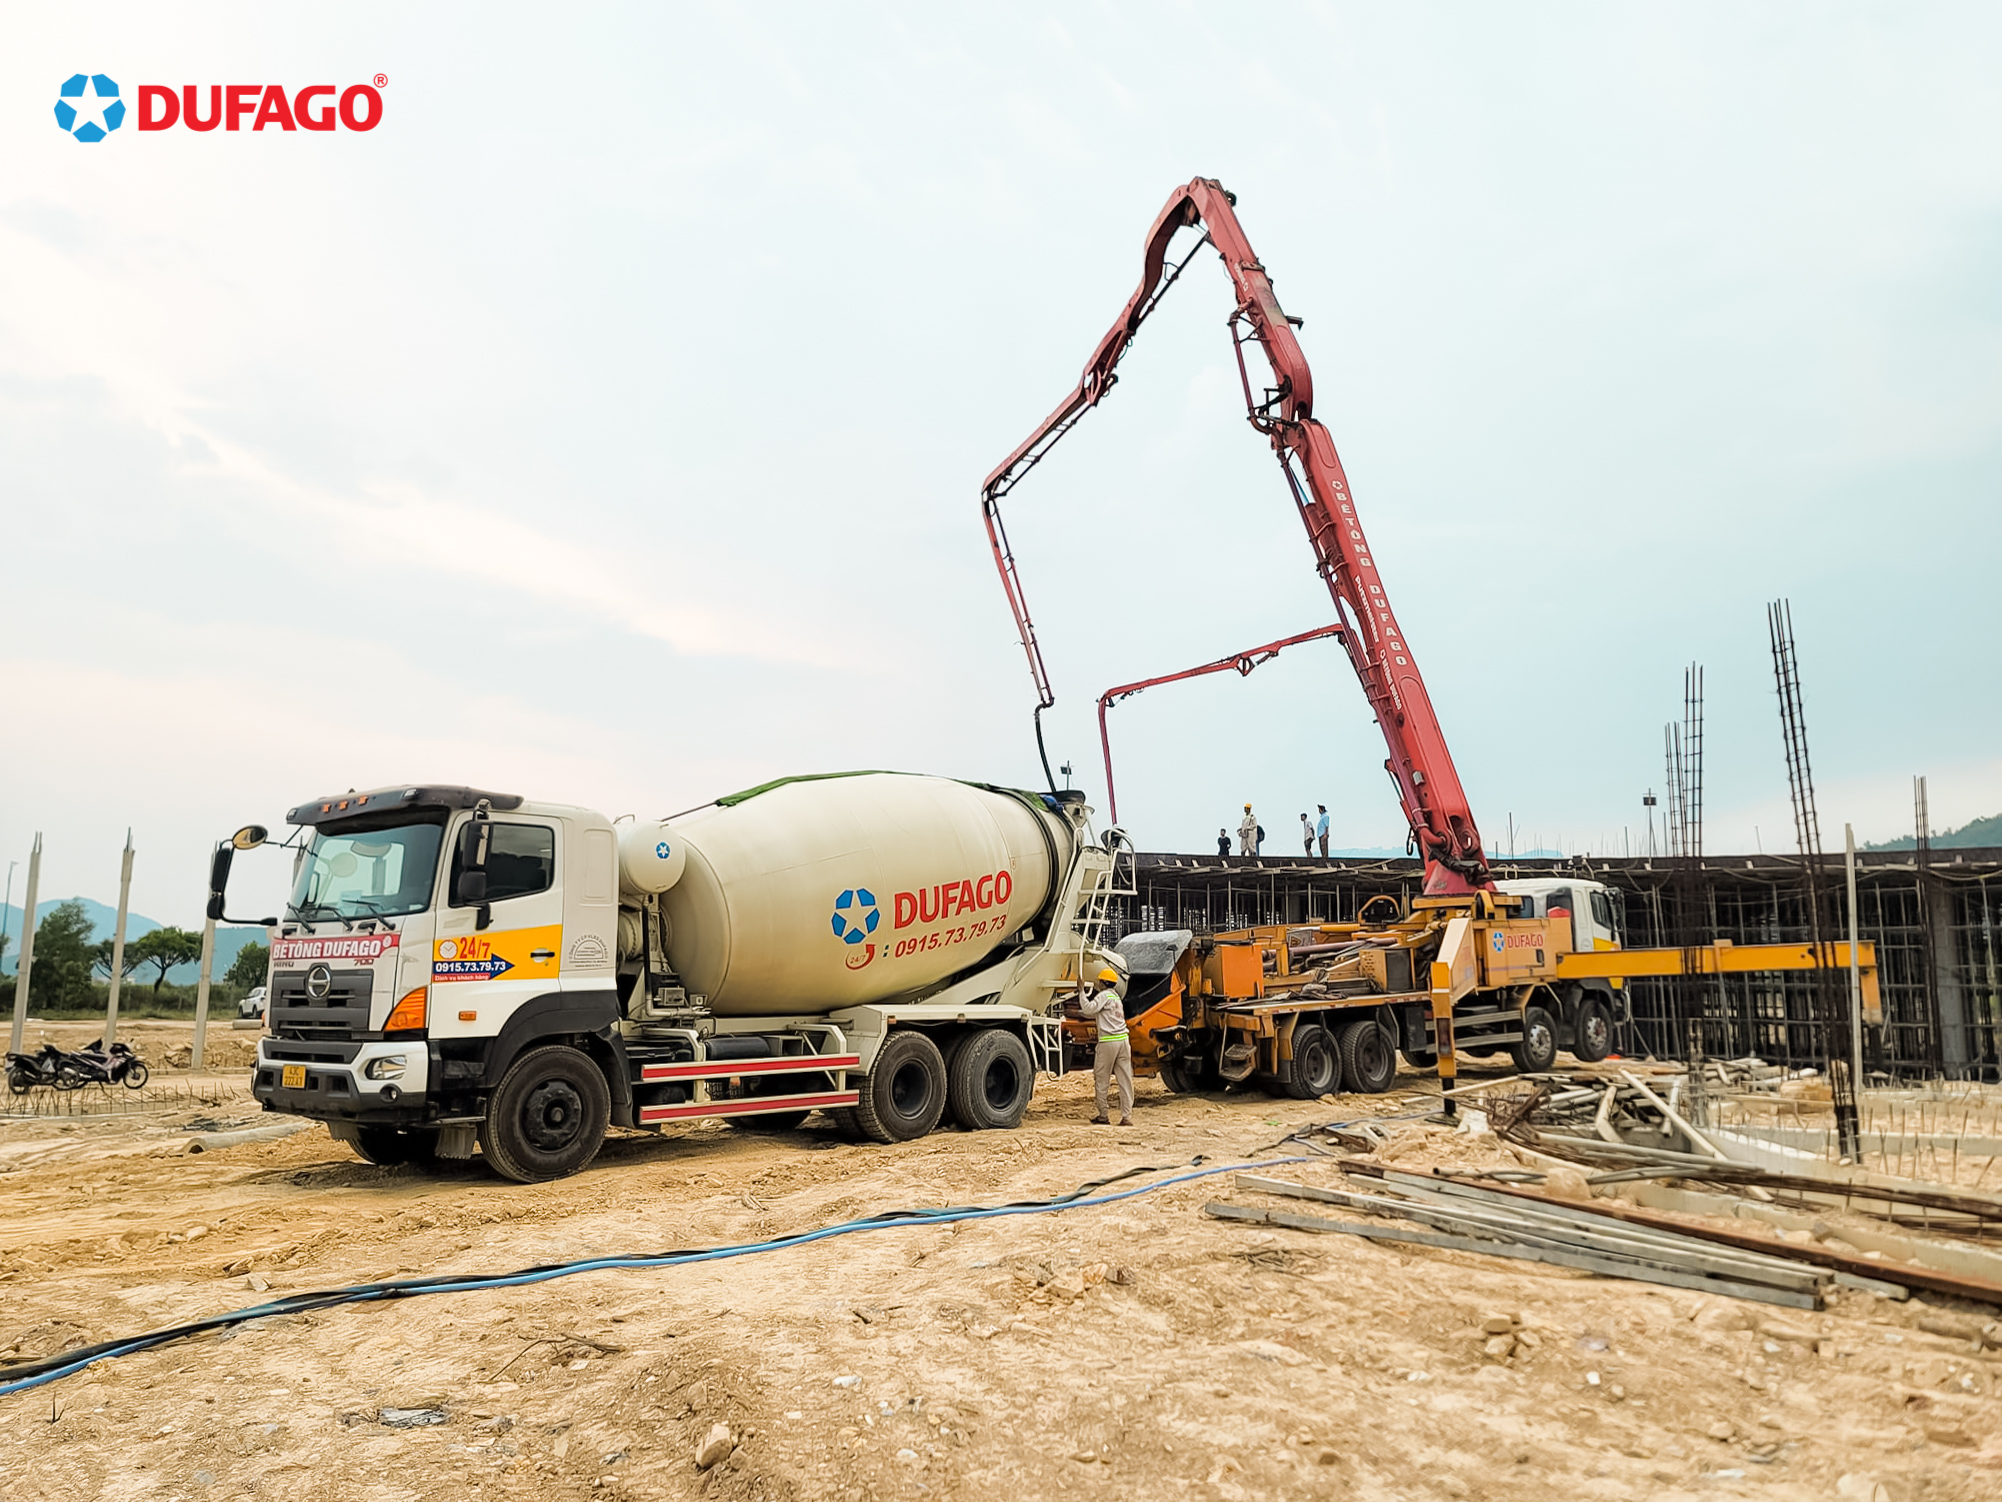 Dufago cung cấp bê tông cho nhà máy ATOMA Đà Nẵng